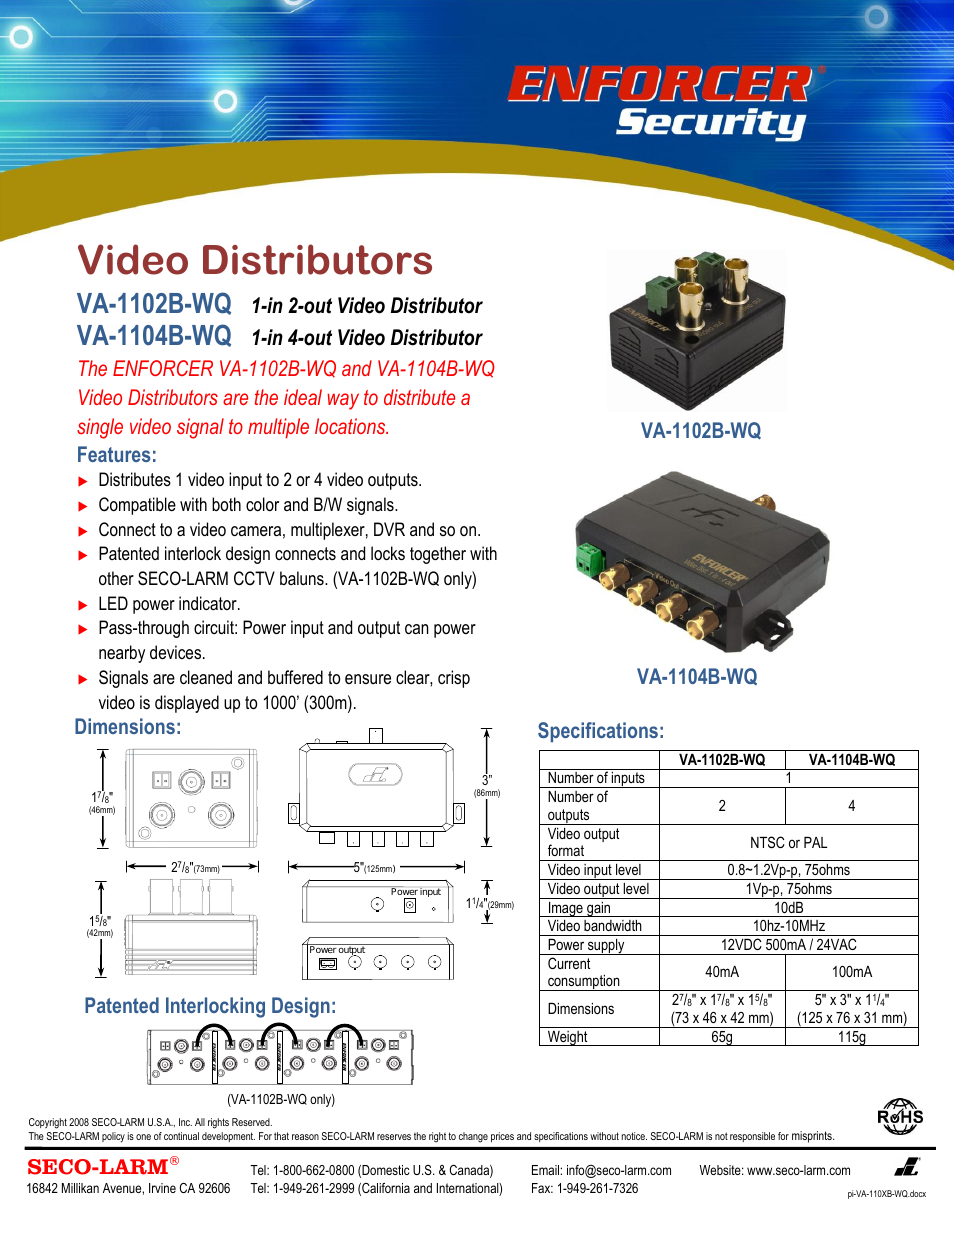 Video Distributors VA-1104B-WQ